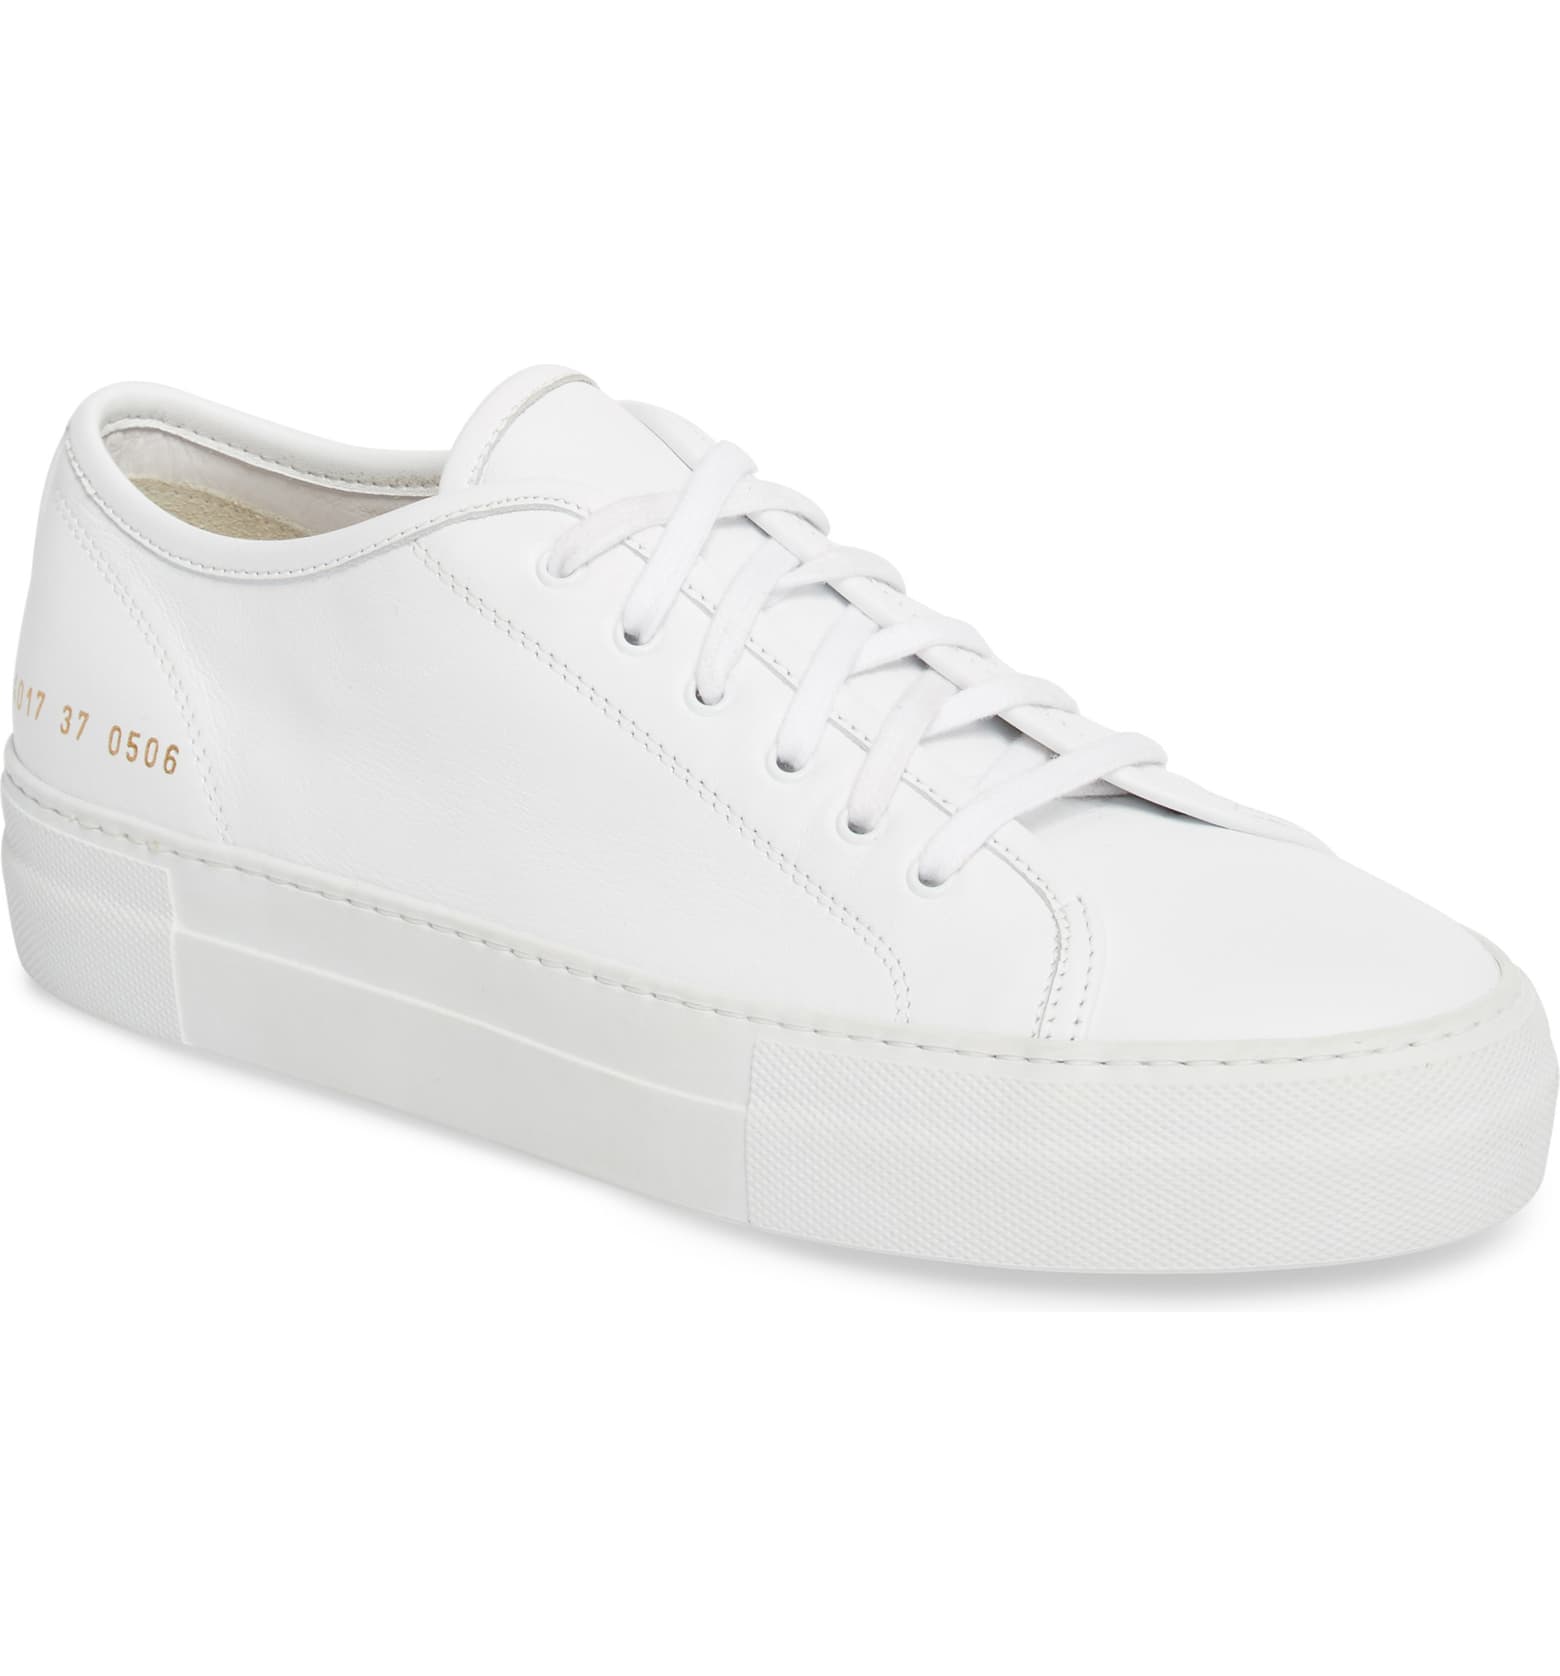 plain white tennis shoes cheap